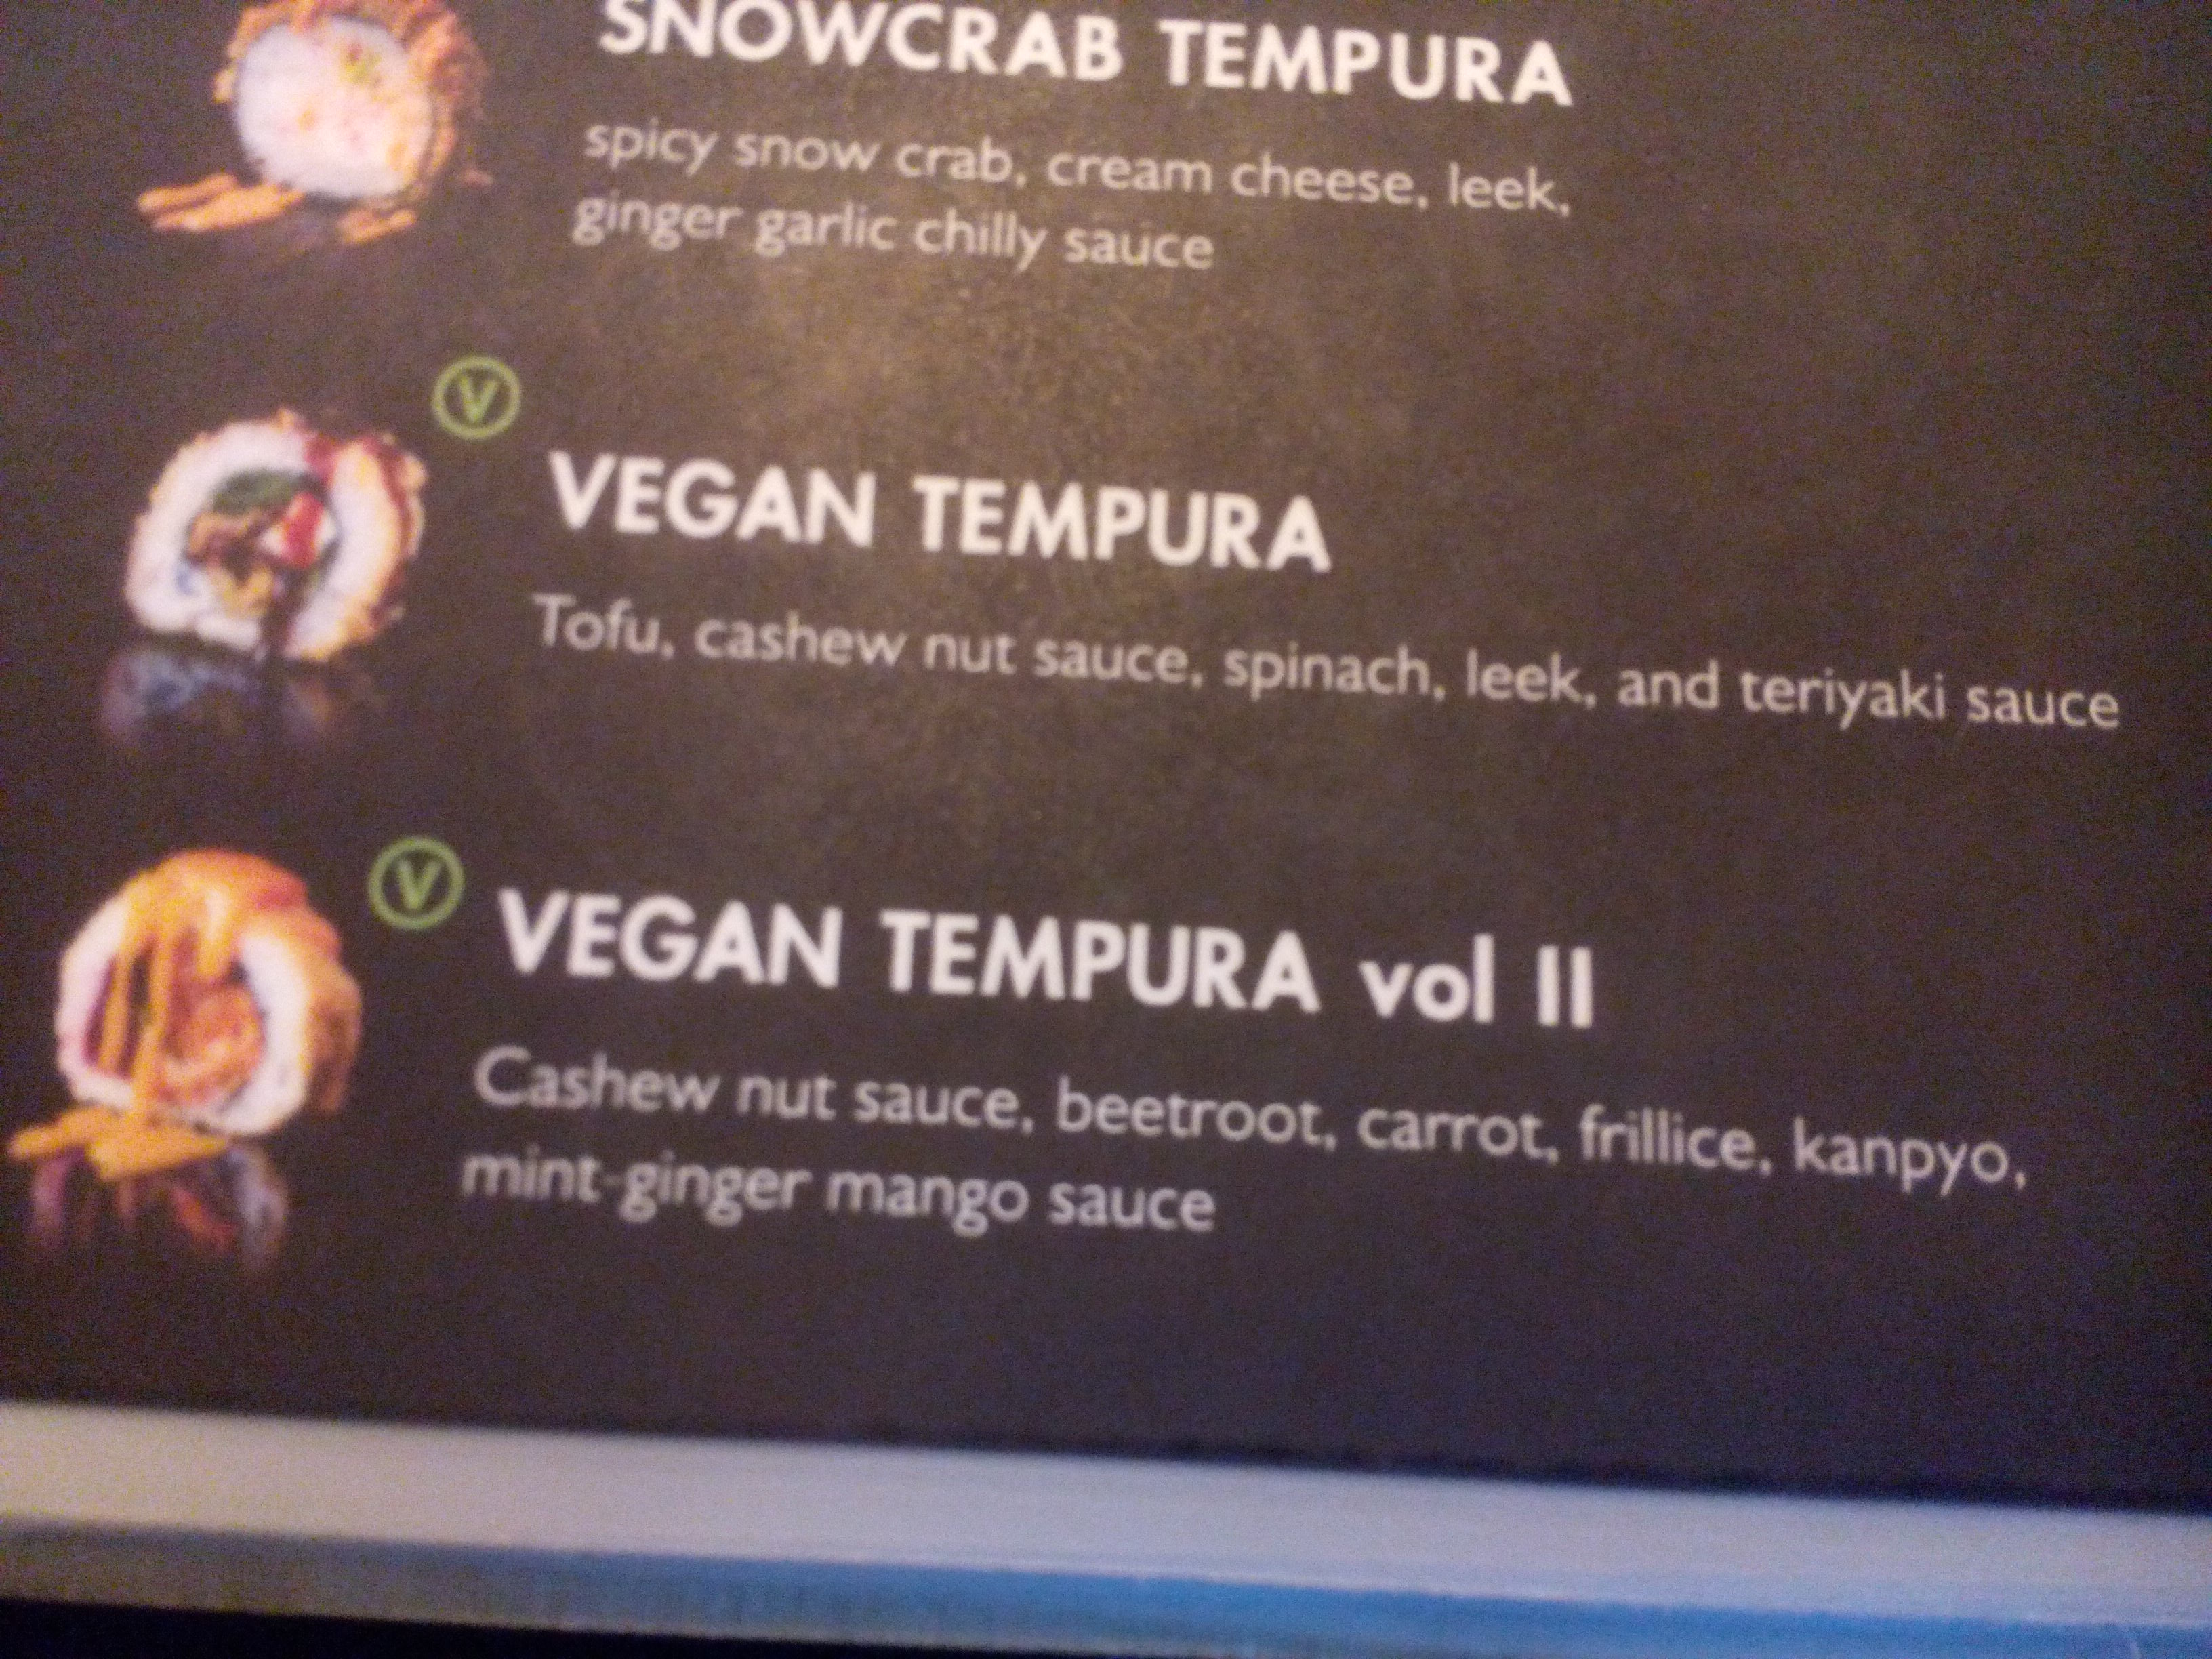 Vegan tempura menu